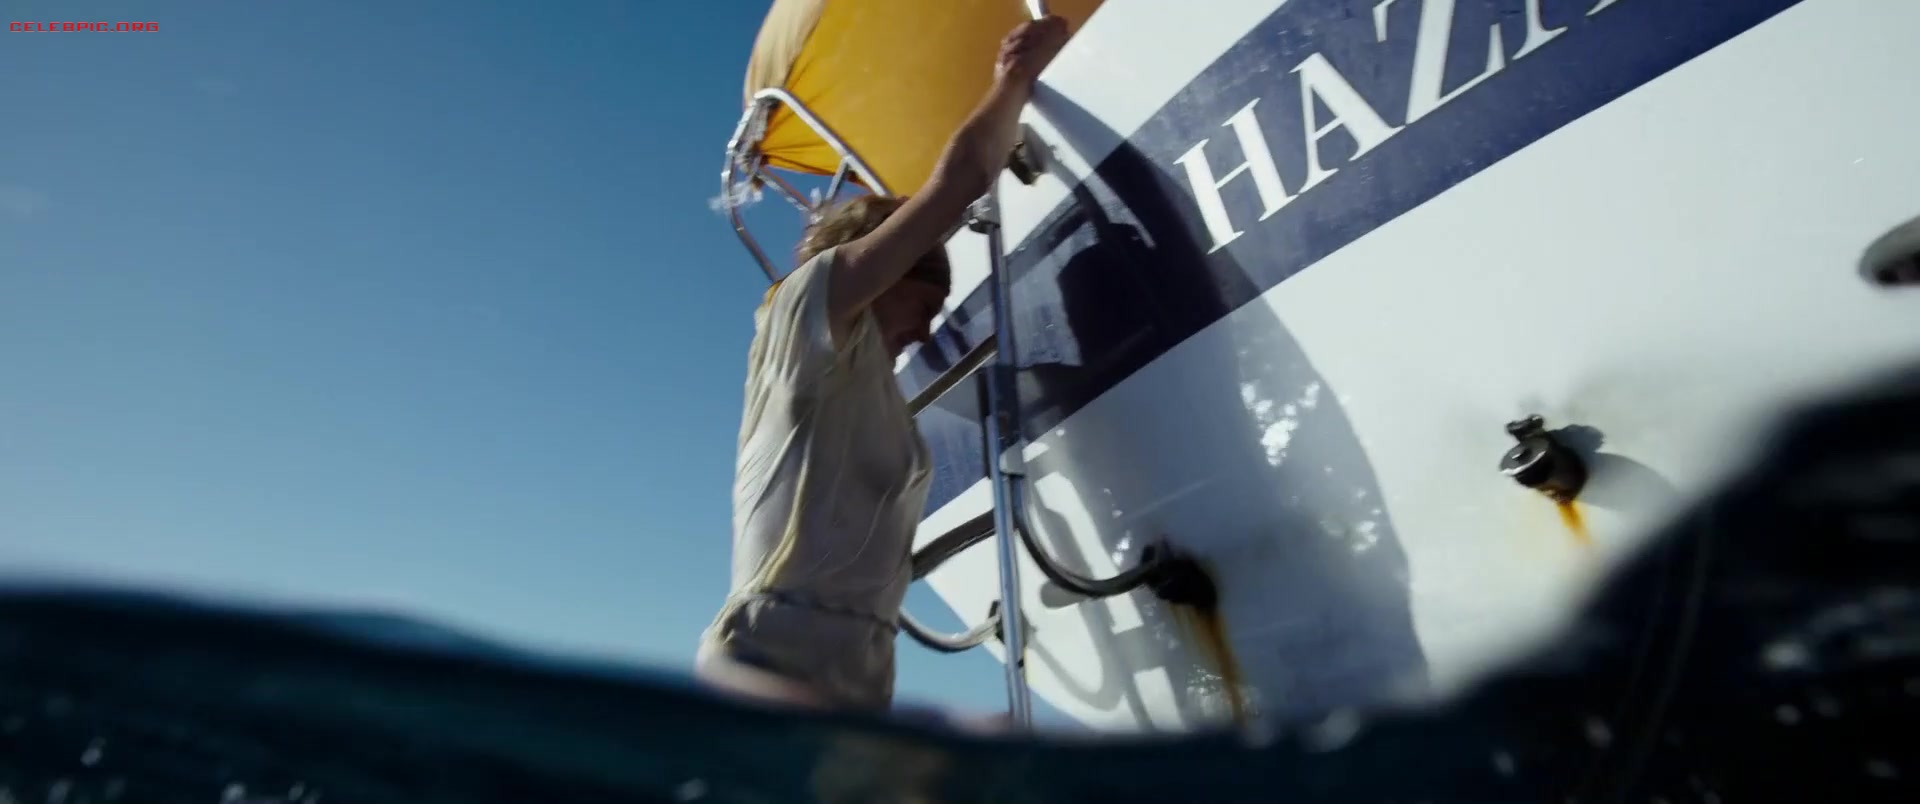 Shailene Woodley - Adrift 1080p (1) 0883.jpg